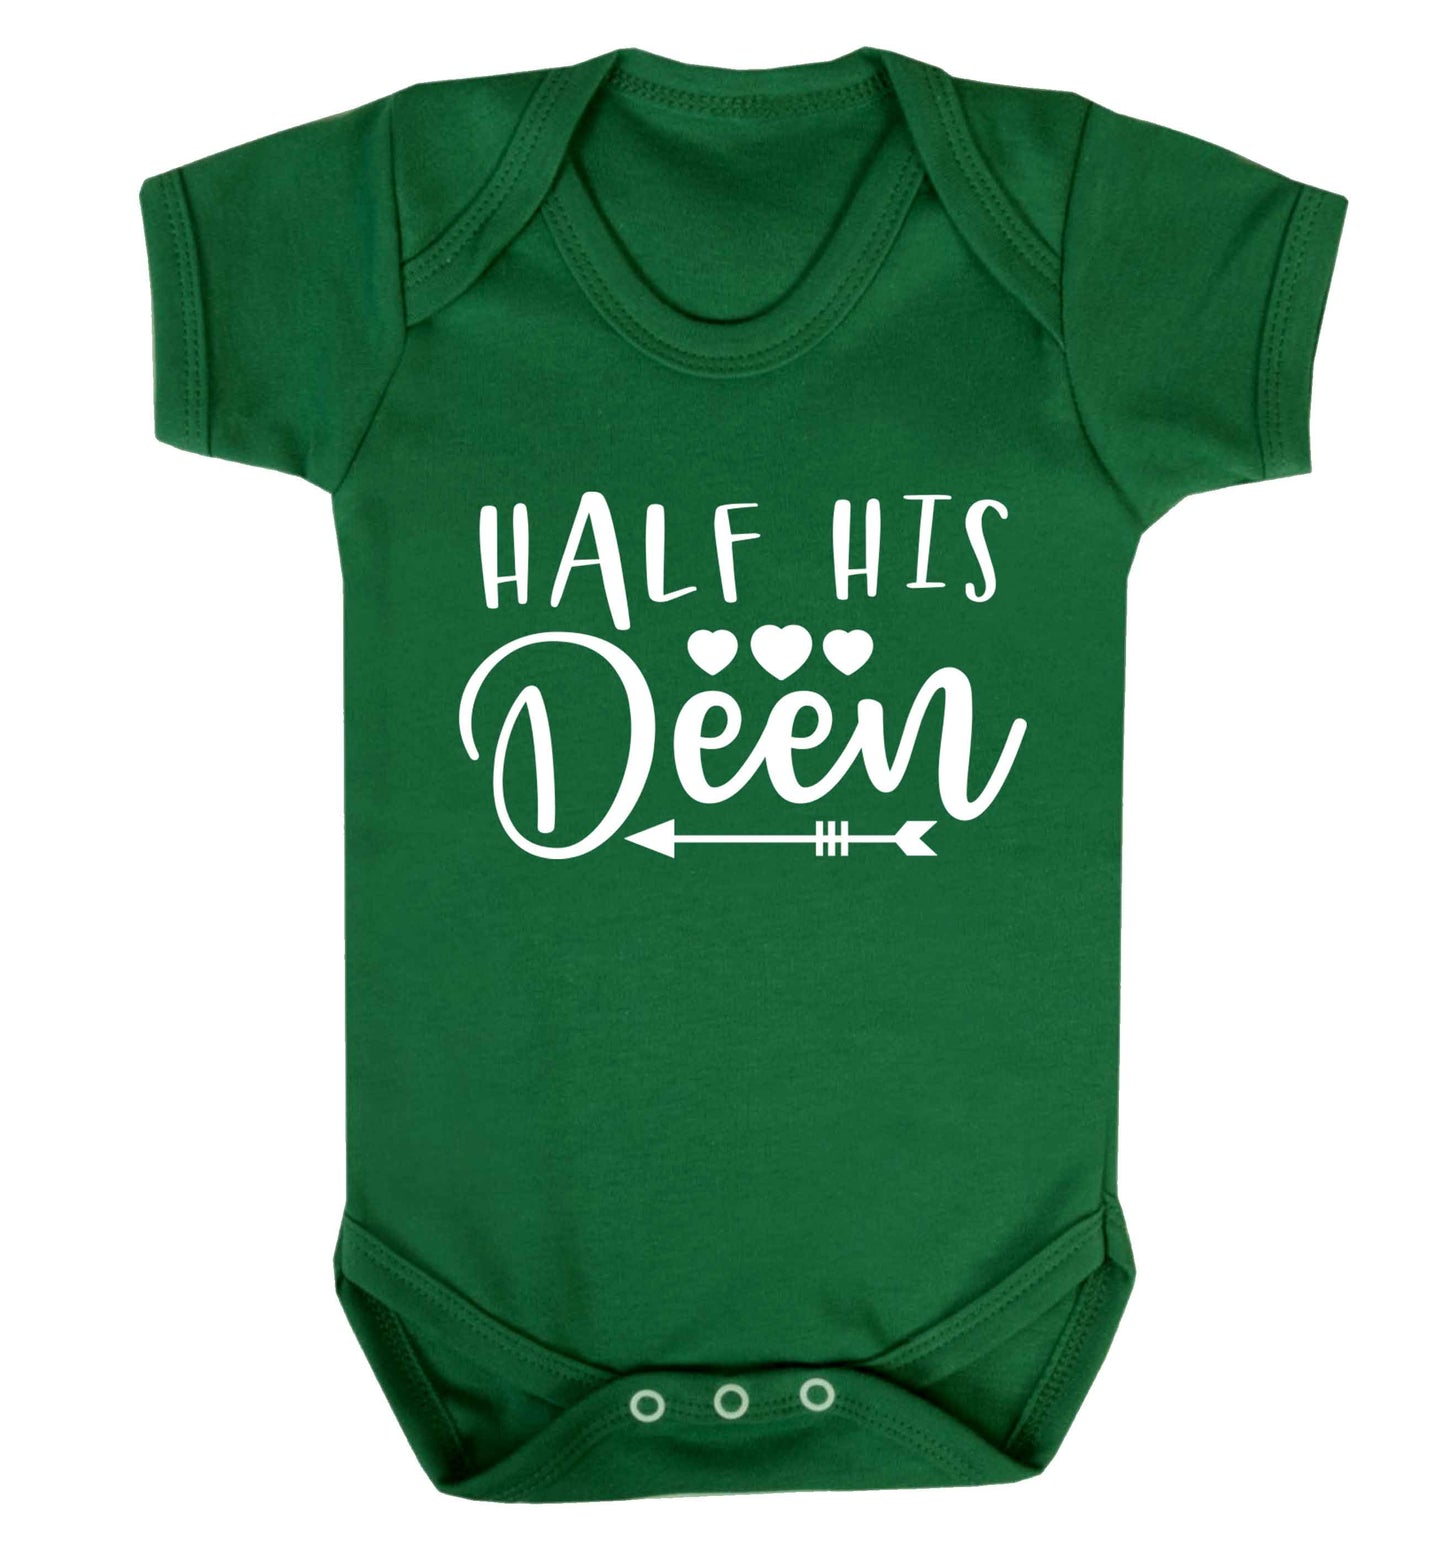 Half his deen Baby Vest green 18-24 months